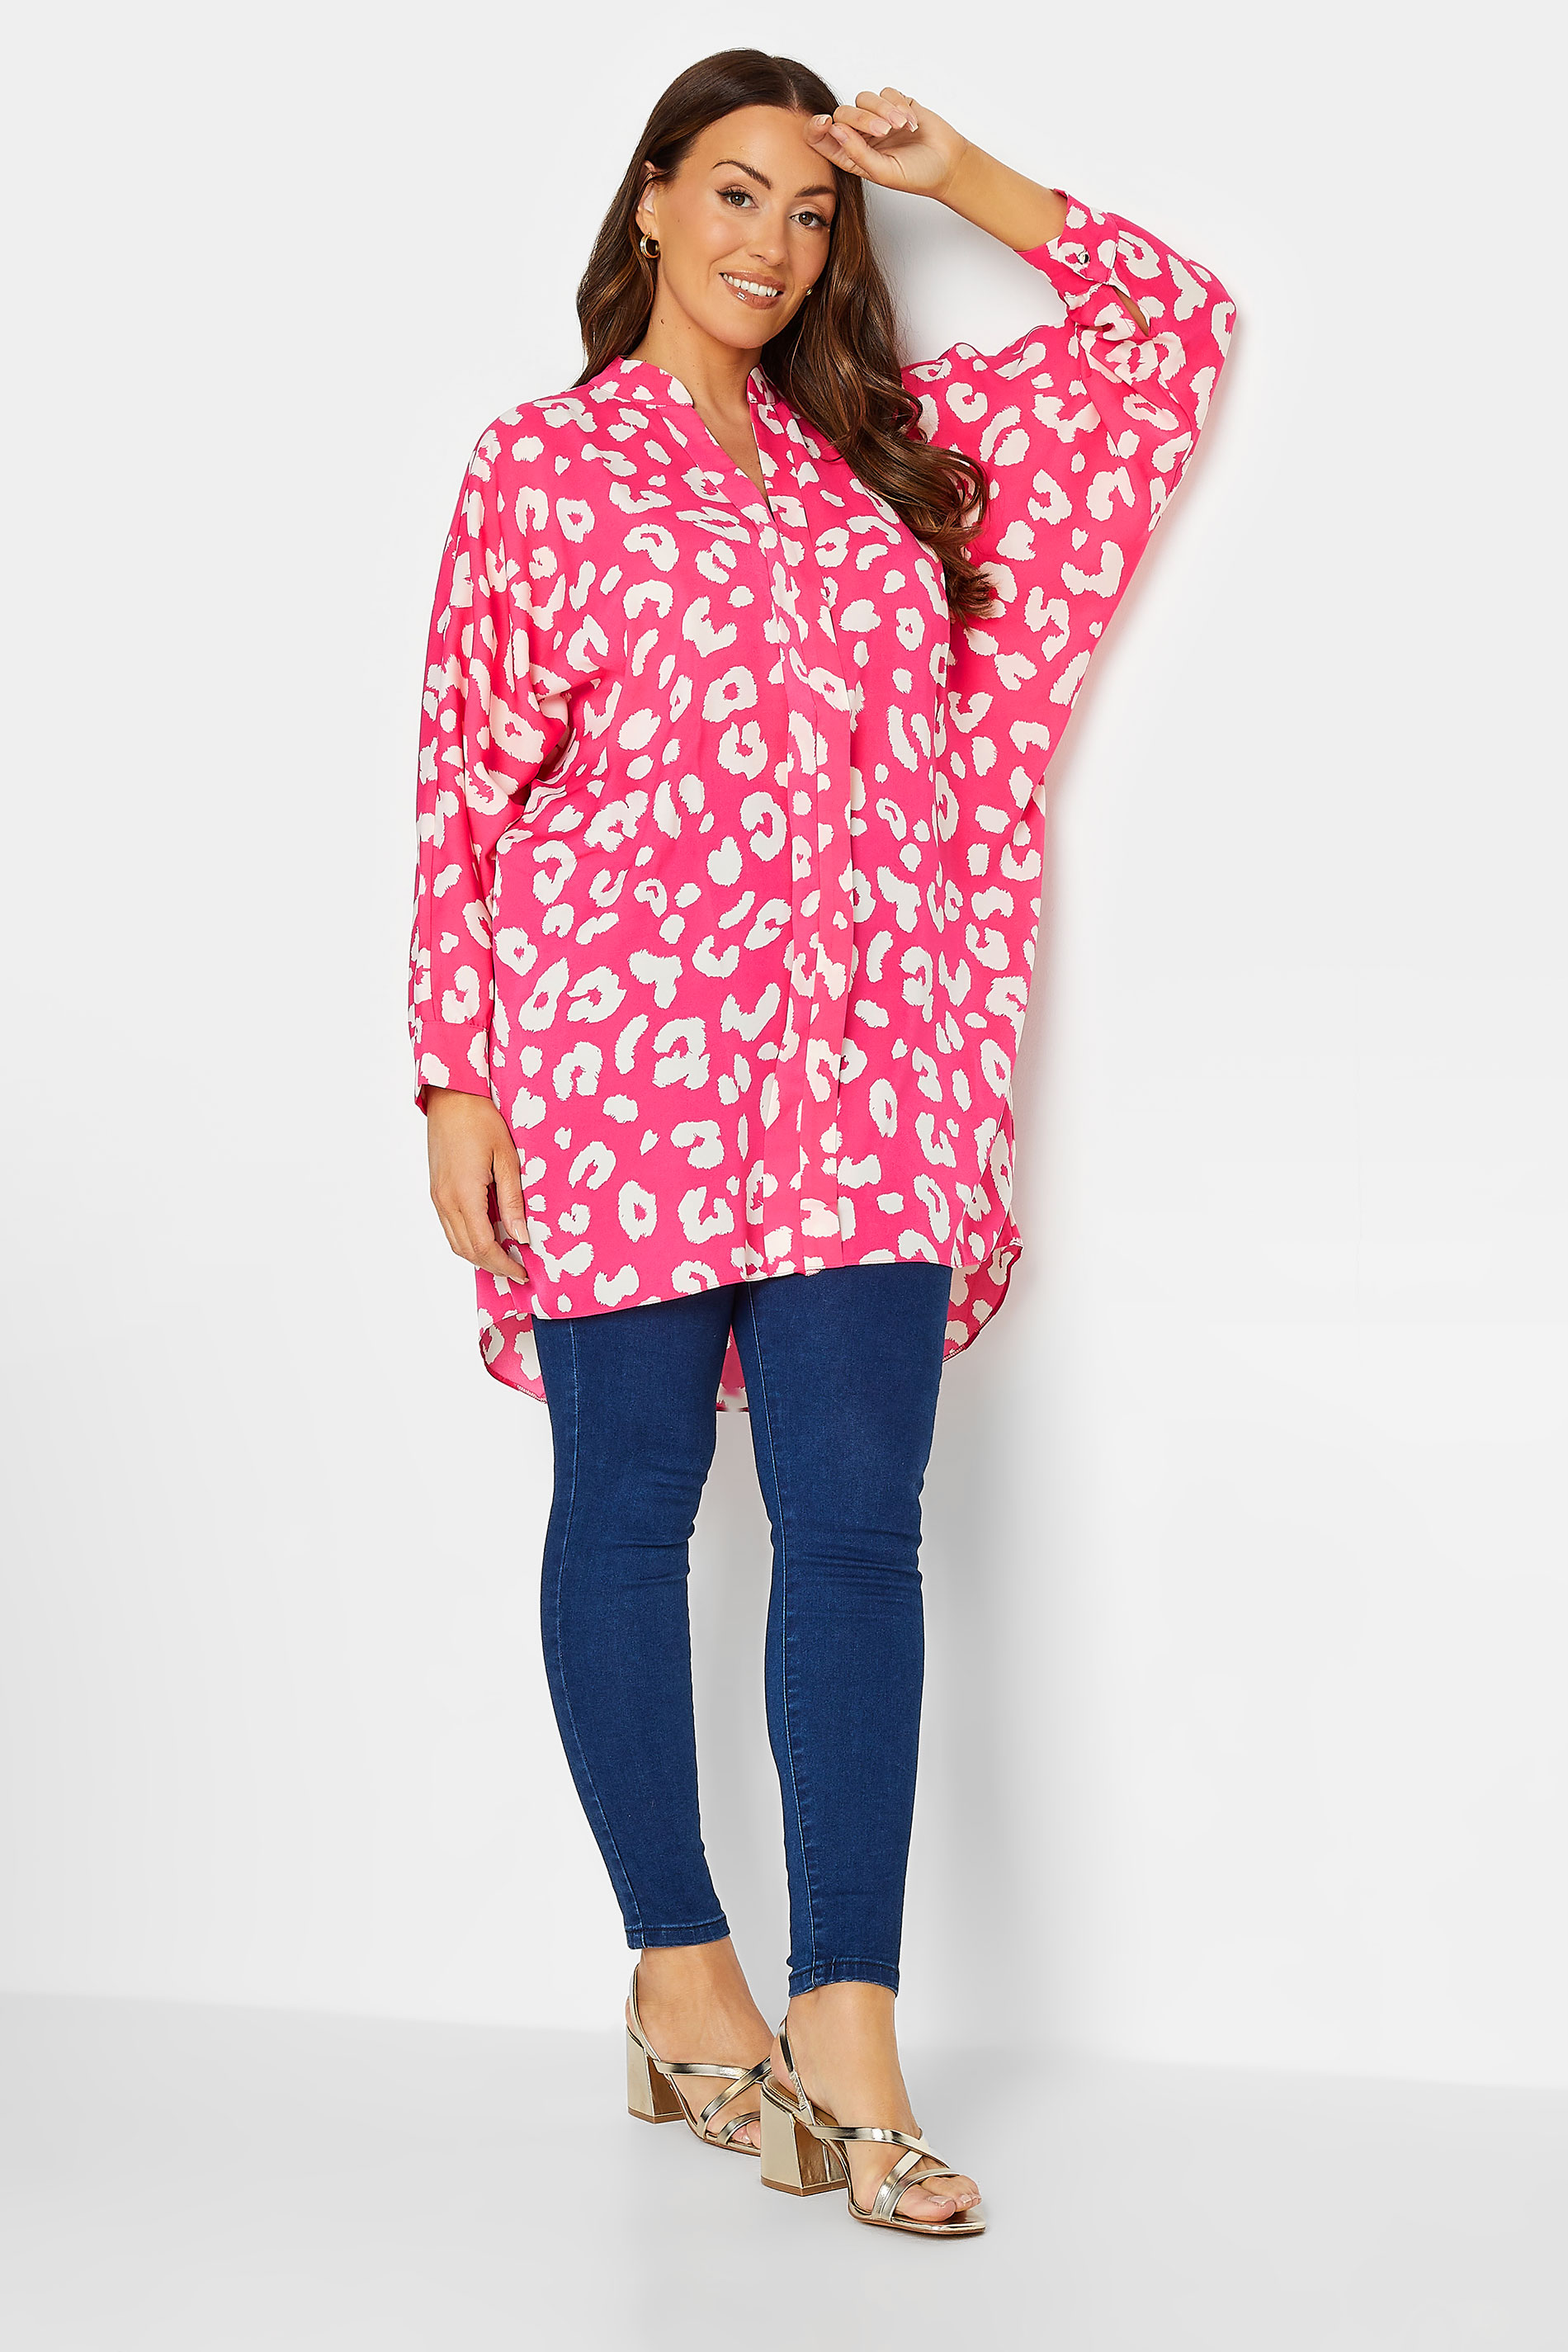 M&Co Pink Leopard Print Blouse | M&Co 2